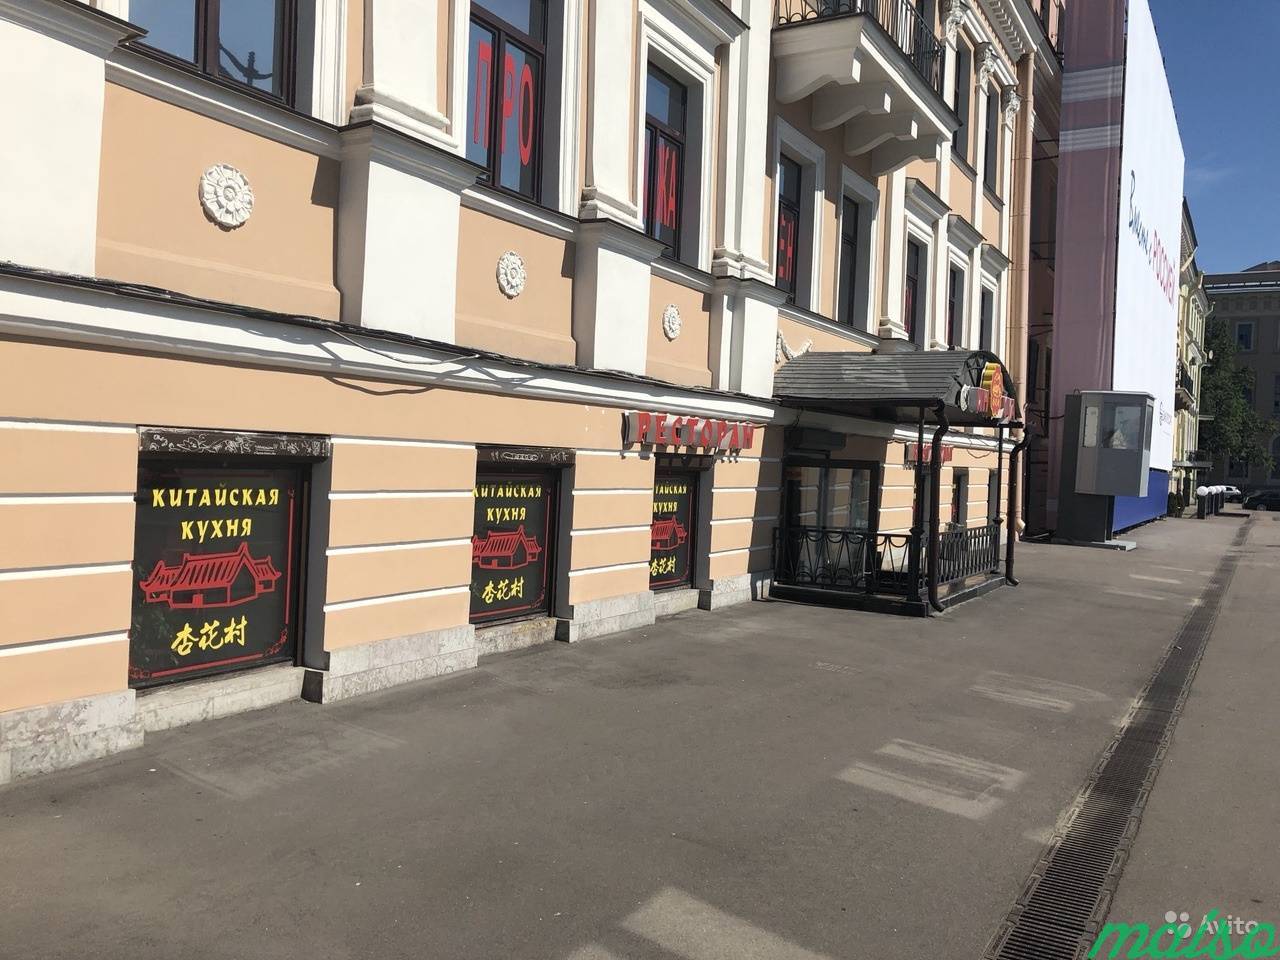 Офис/магазин с видом на Благовещенский мост в Санкт-Петербурге. Фото 1